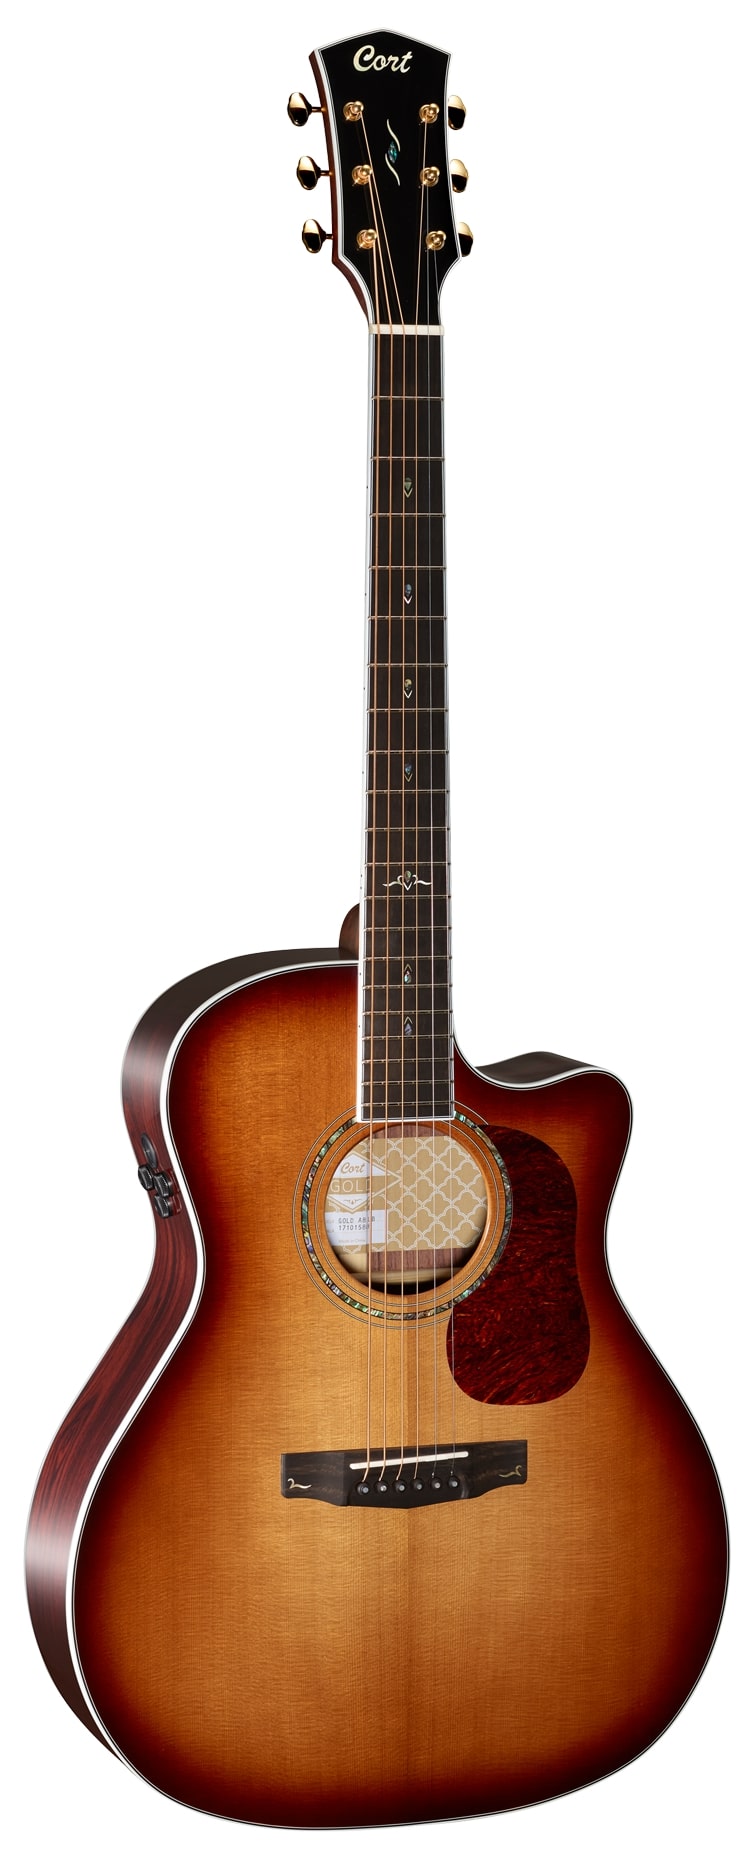 Электроакустические гитары Cort Gold-A8-WCASE-LB (чехол в комплекте) акустические гитары cort gold d8 wcase nat